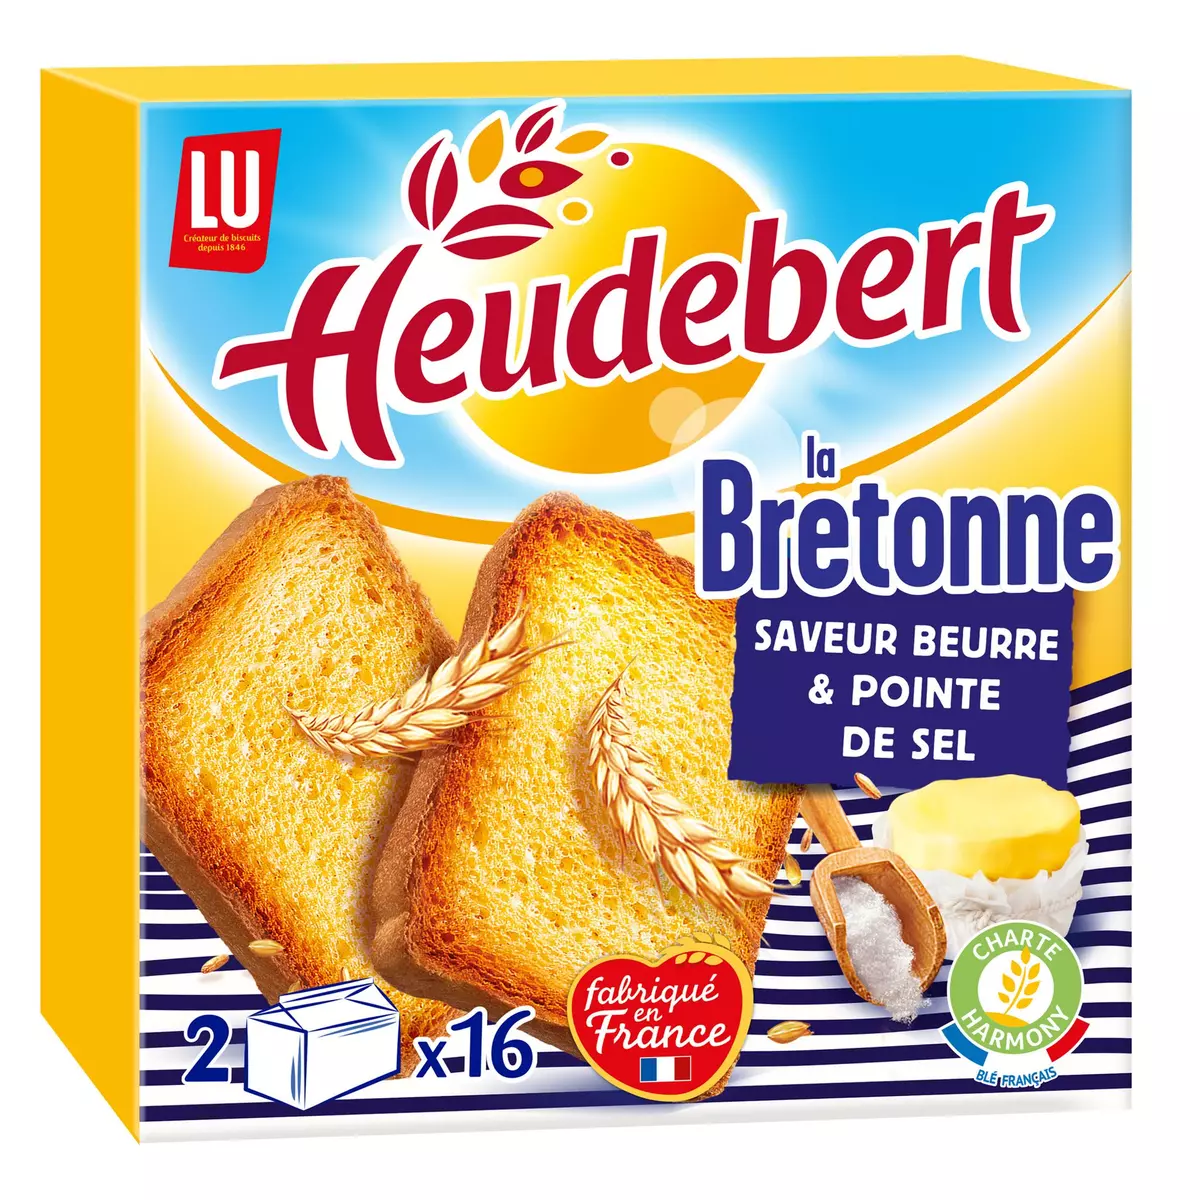 HEUDEBERT Biscottes la Bretonne saveur beurre et pointe de sel 2x16 biscottes 290g